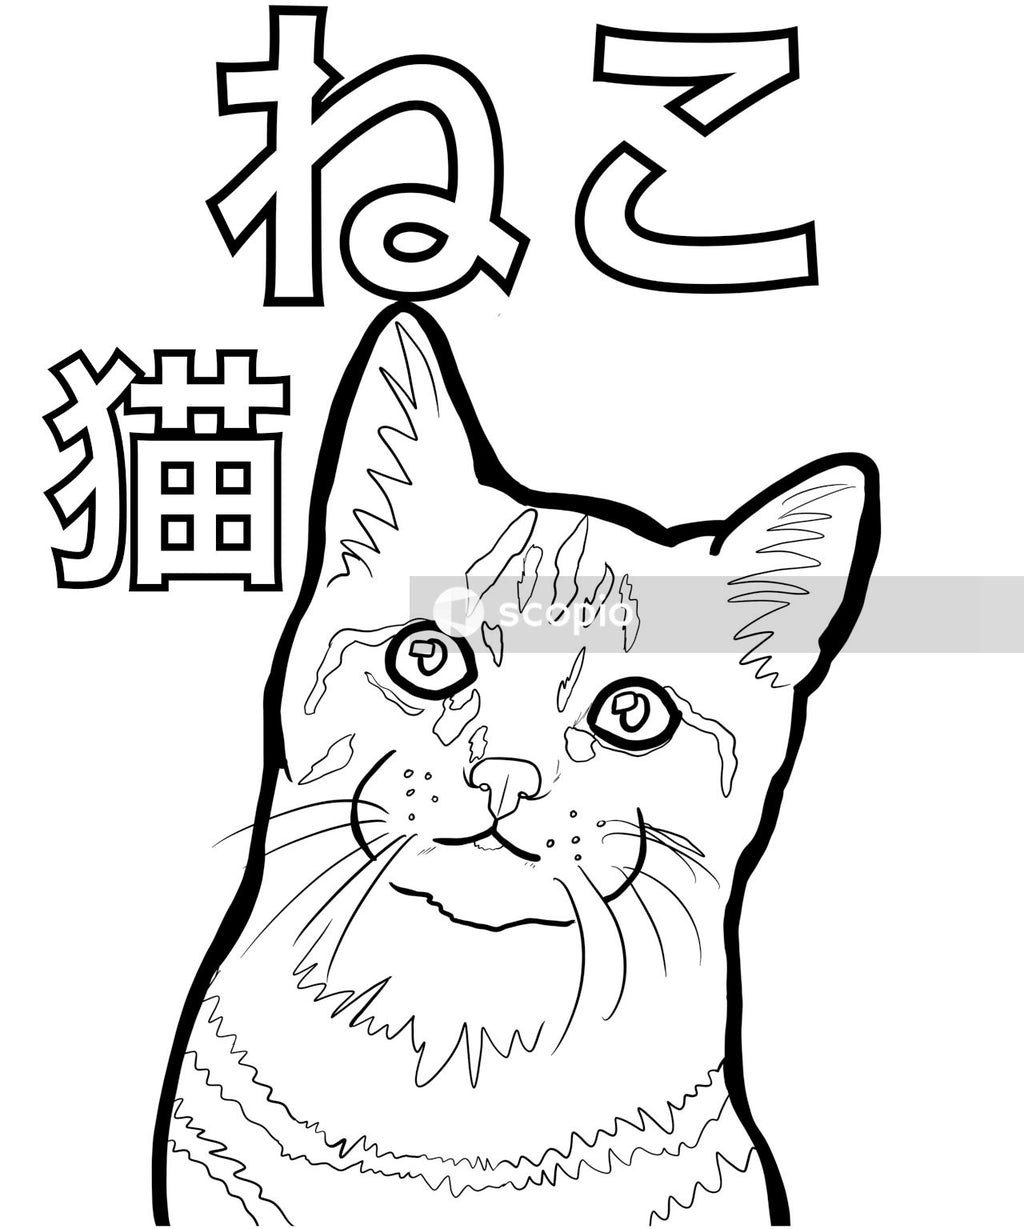 Black and white cat illustration